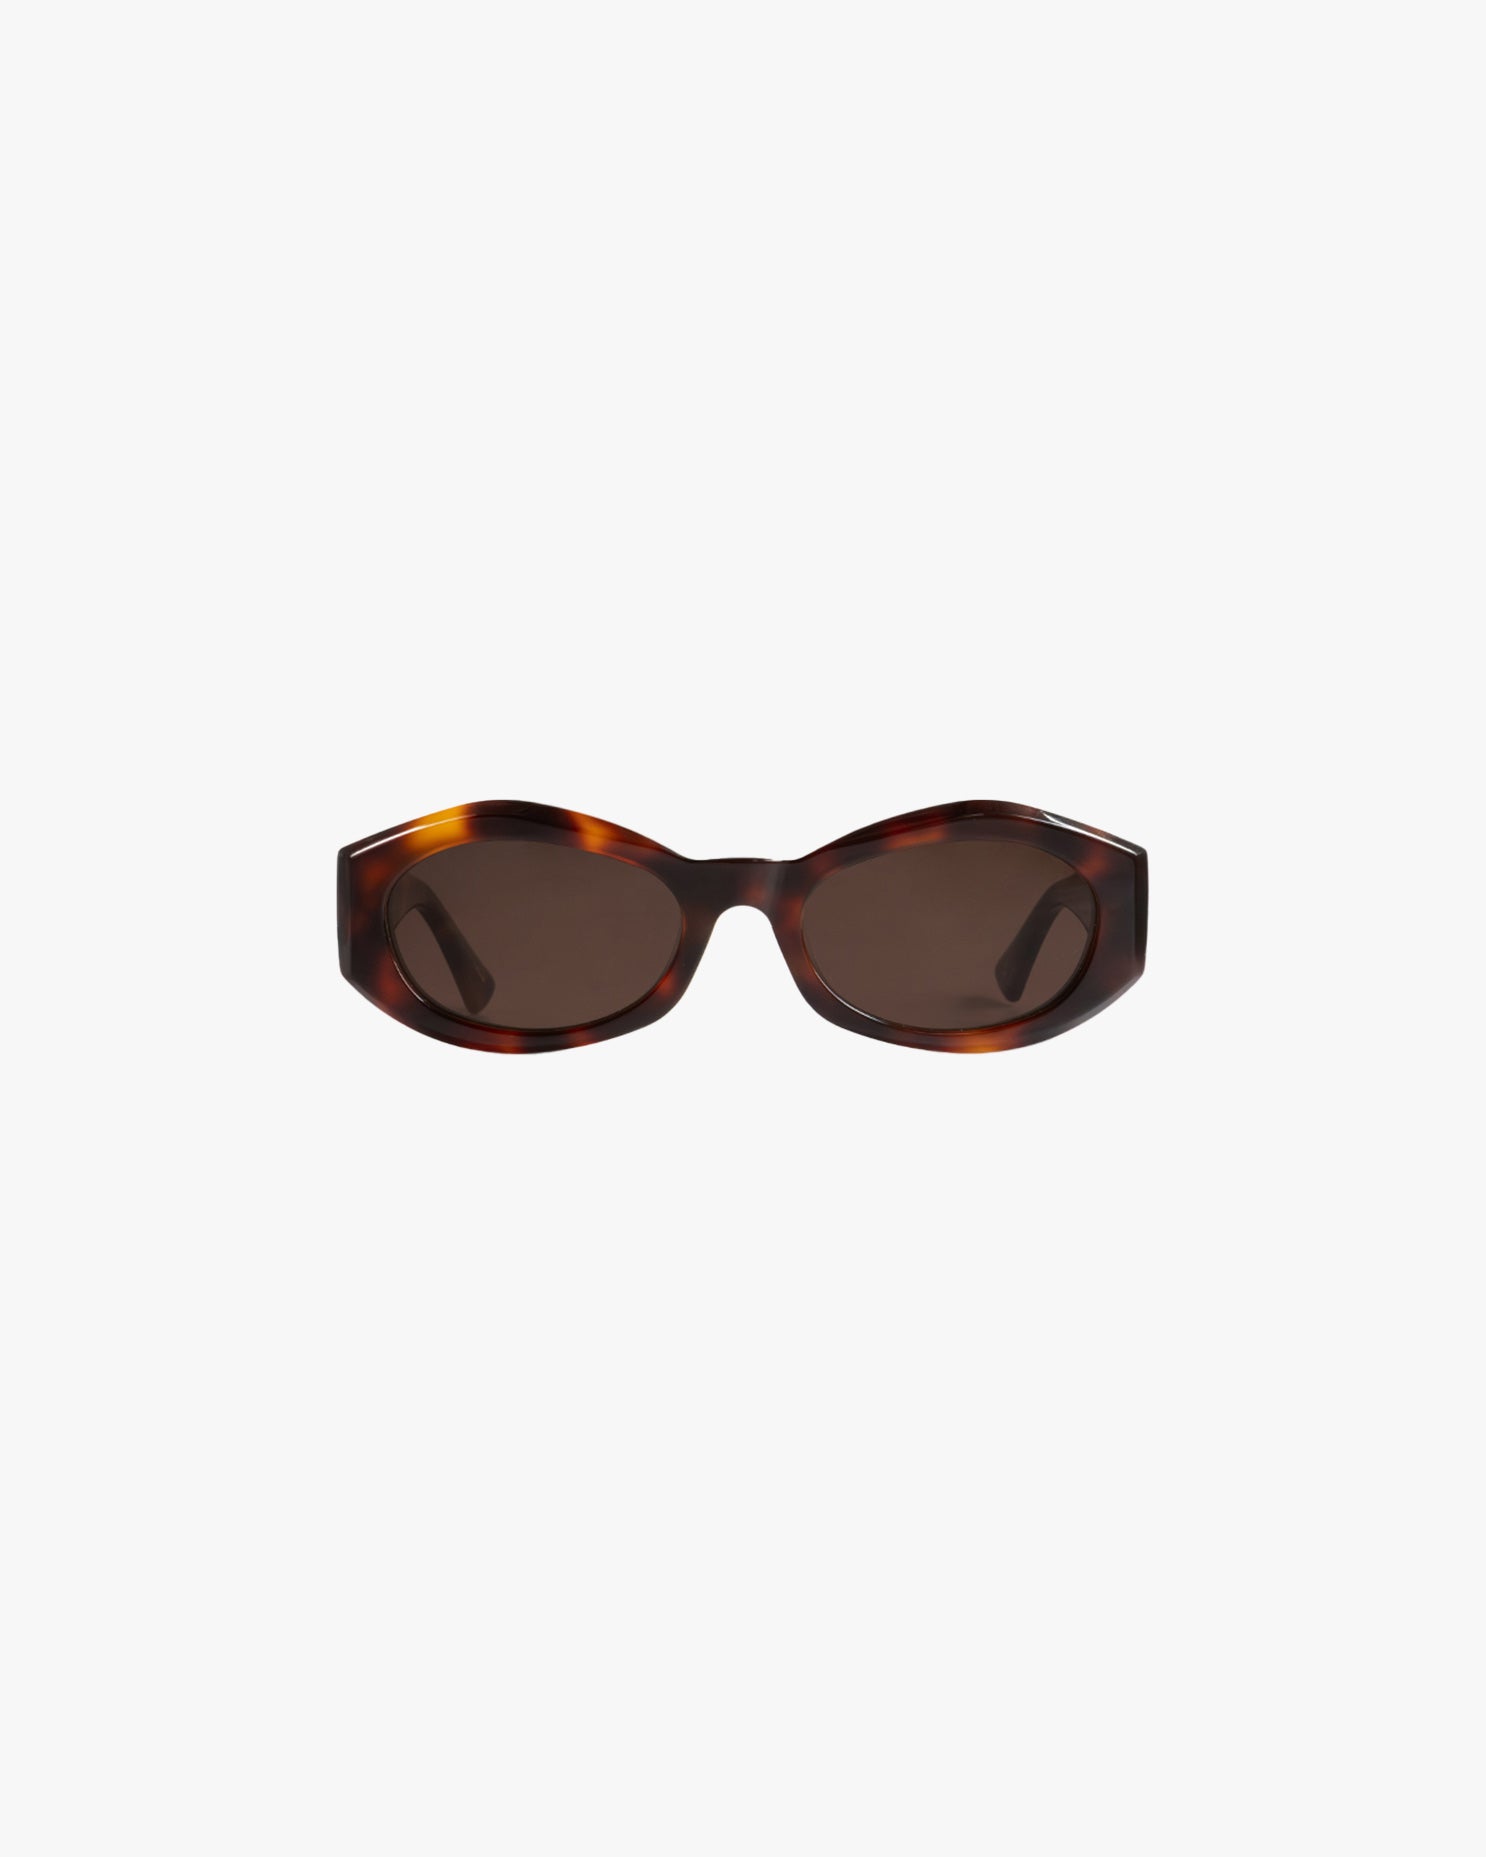 Celeste Sunglasses in Tortoise Brown